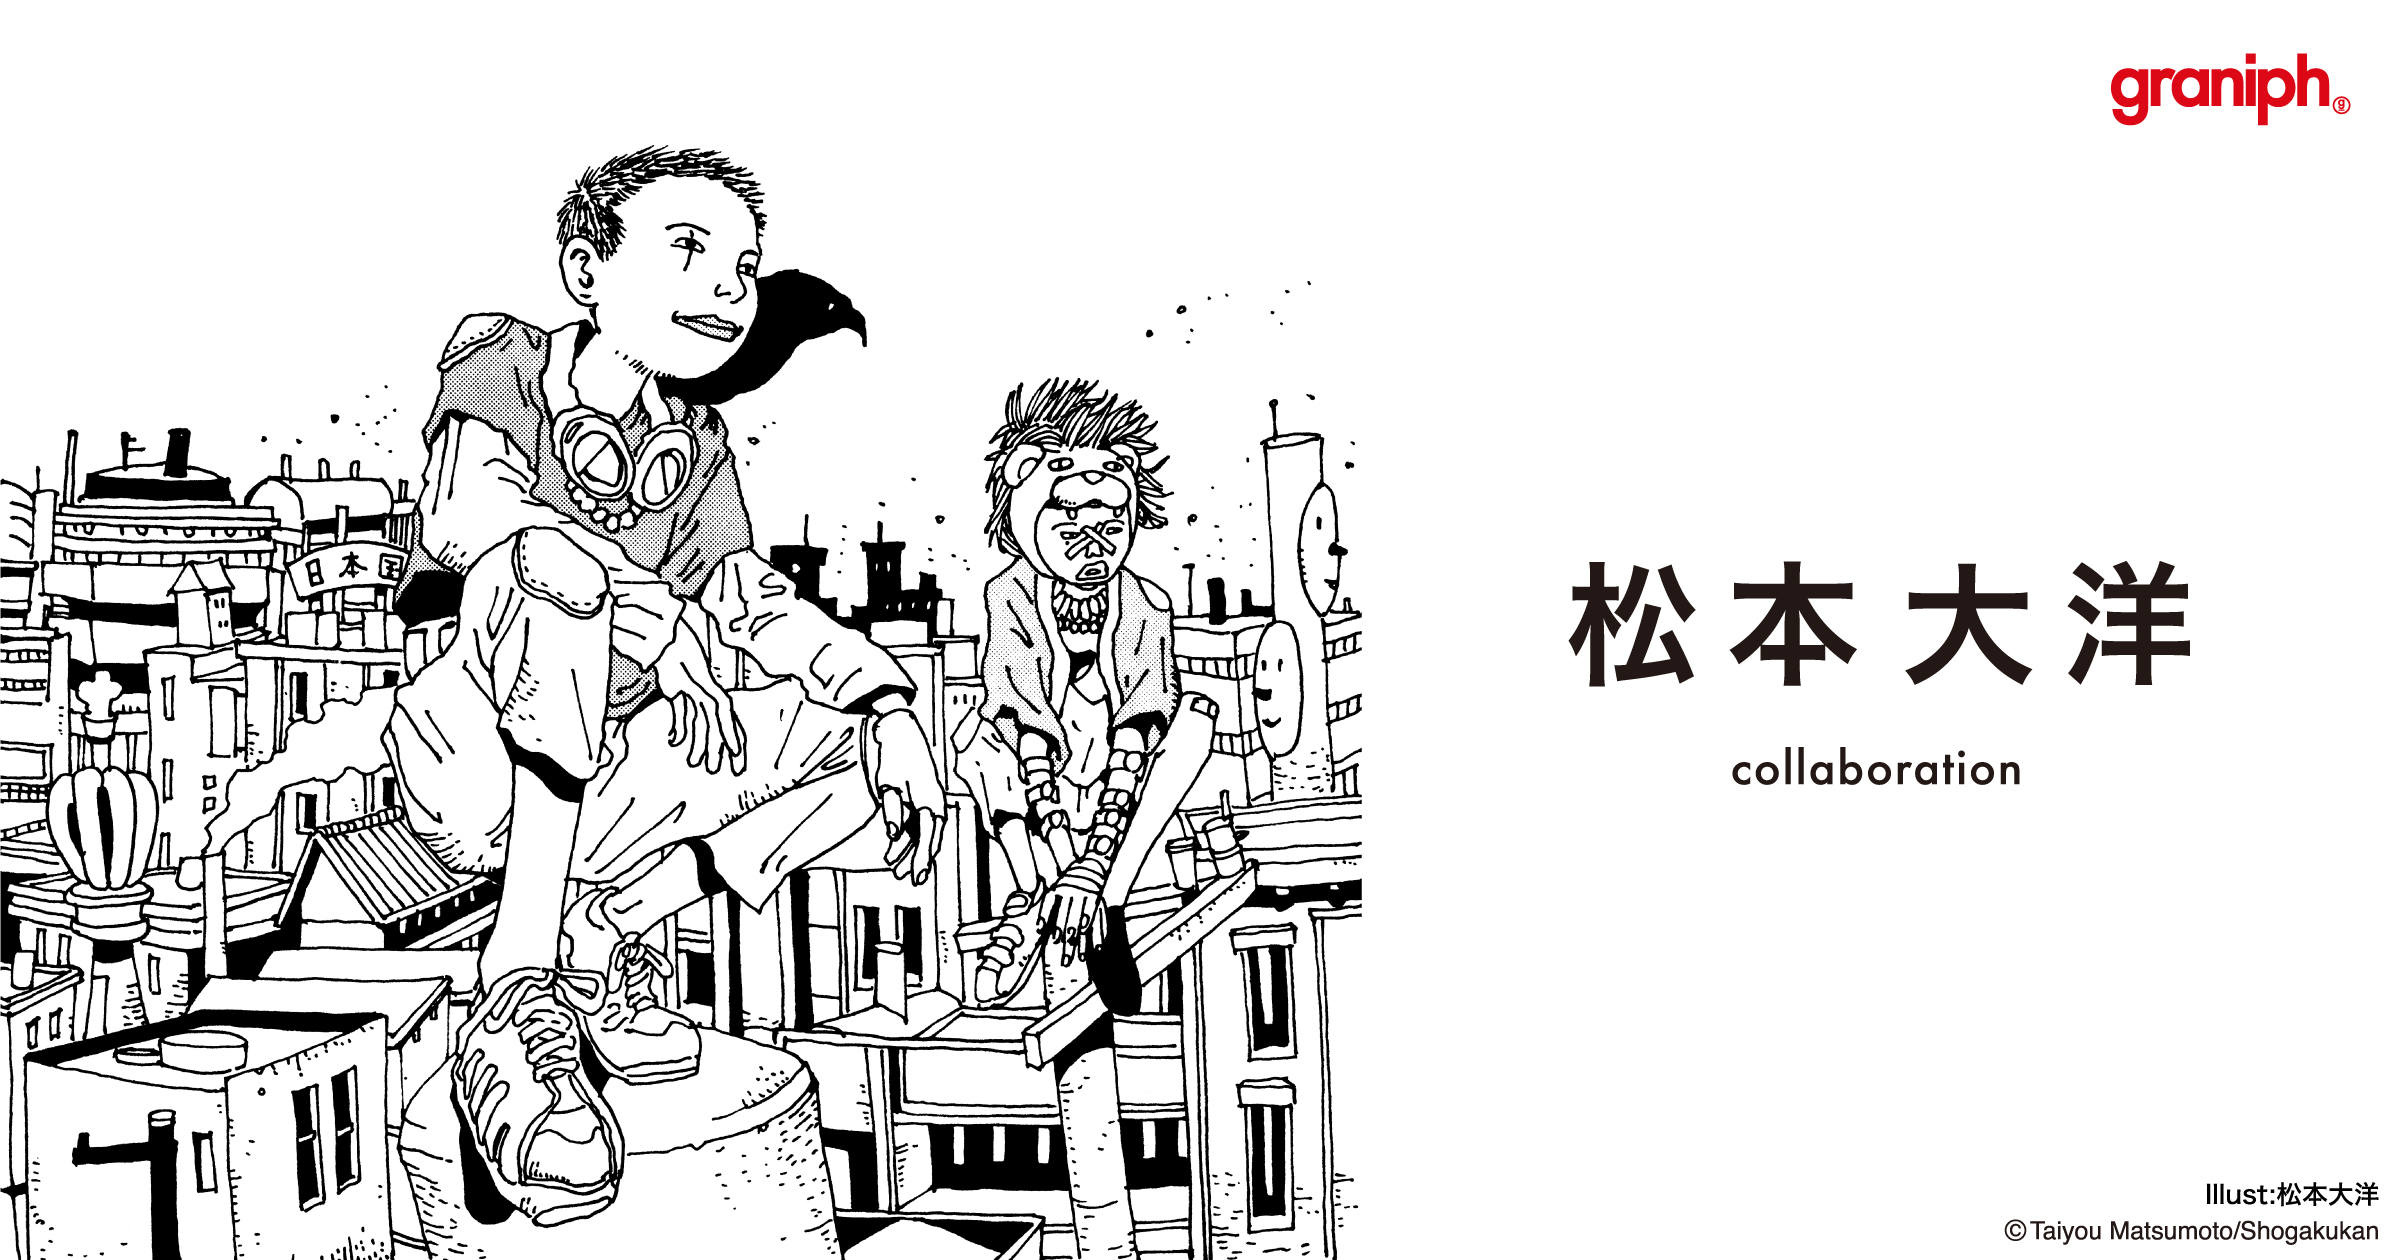 グラニフが漫画家 松本大洋氏とコラボレーション 株式会社グラニフのプレスリリース